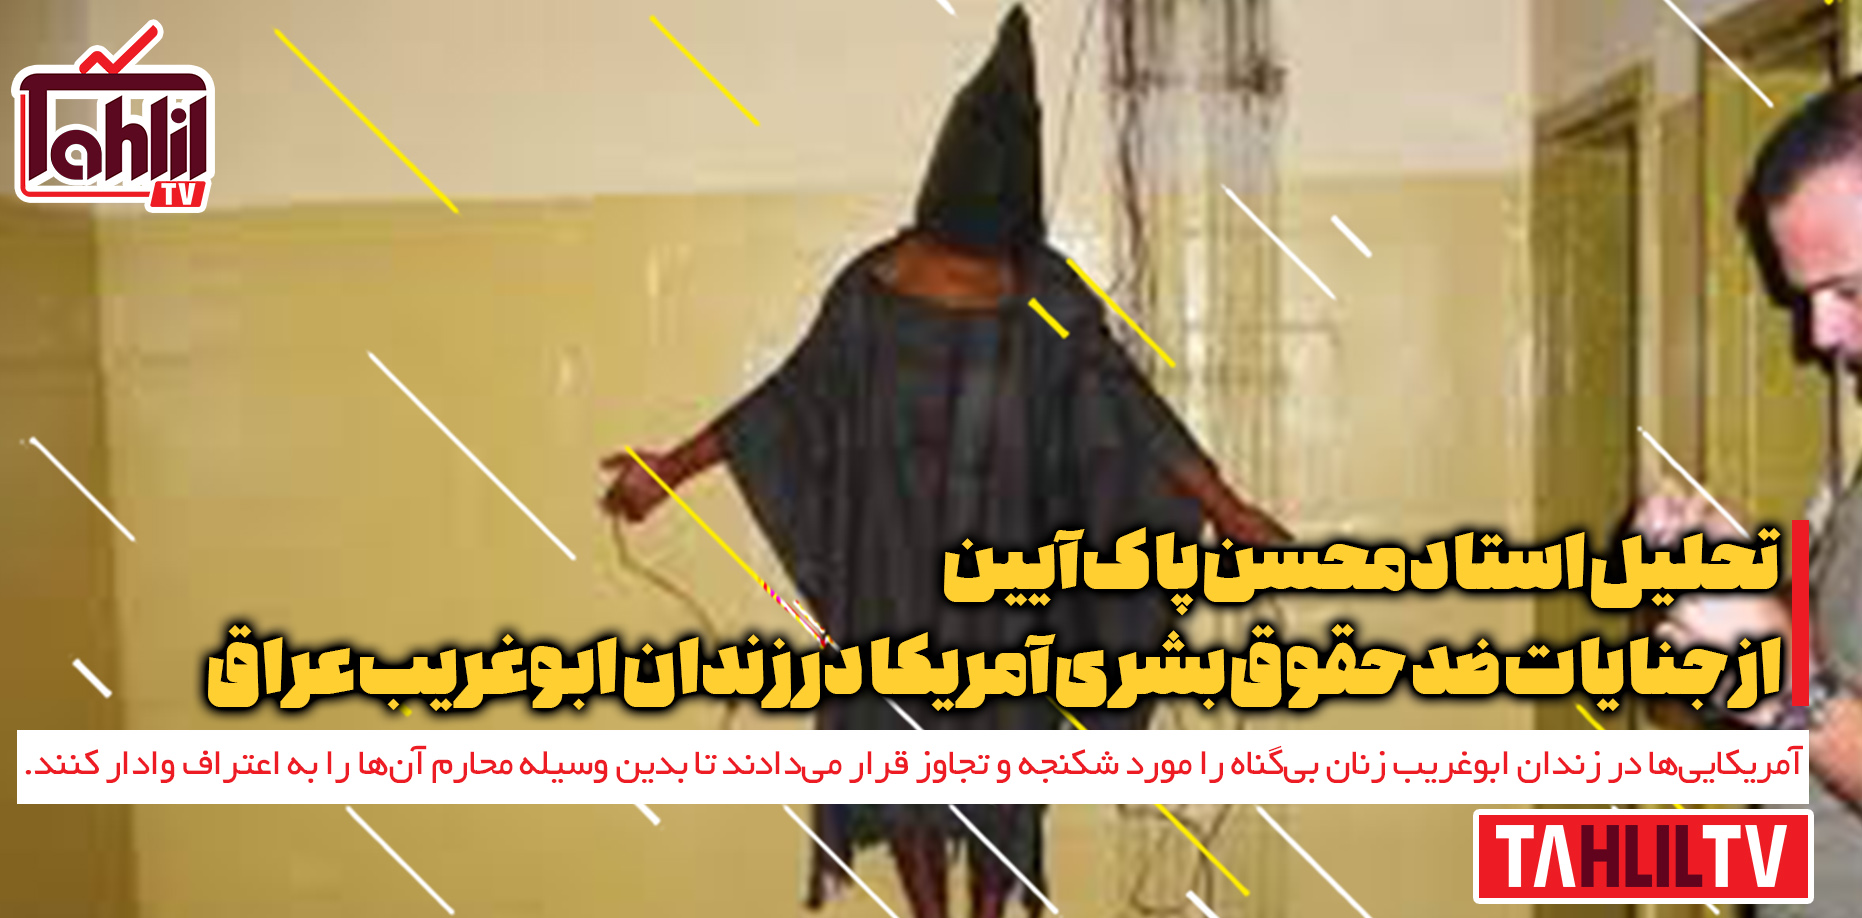 جنایات ضد حقوق بشری آمریکا در زندان ابوغریب عراق